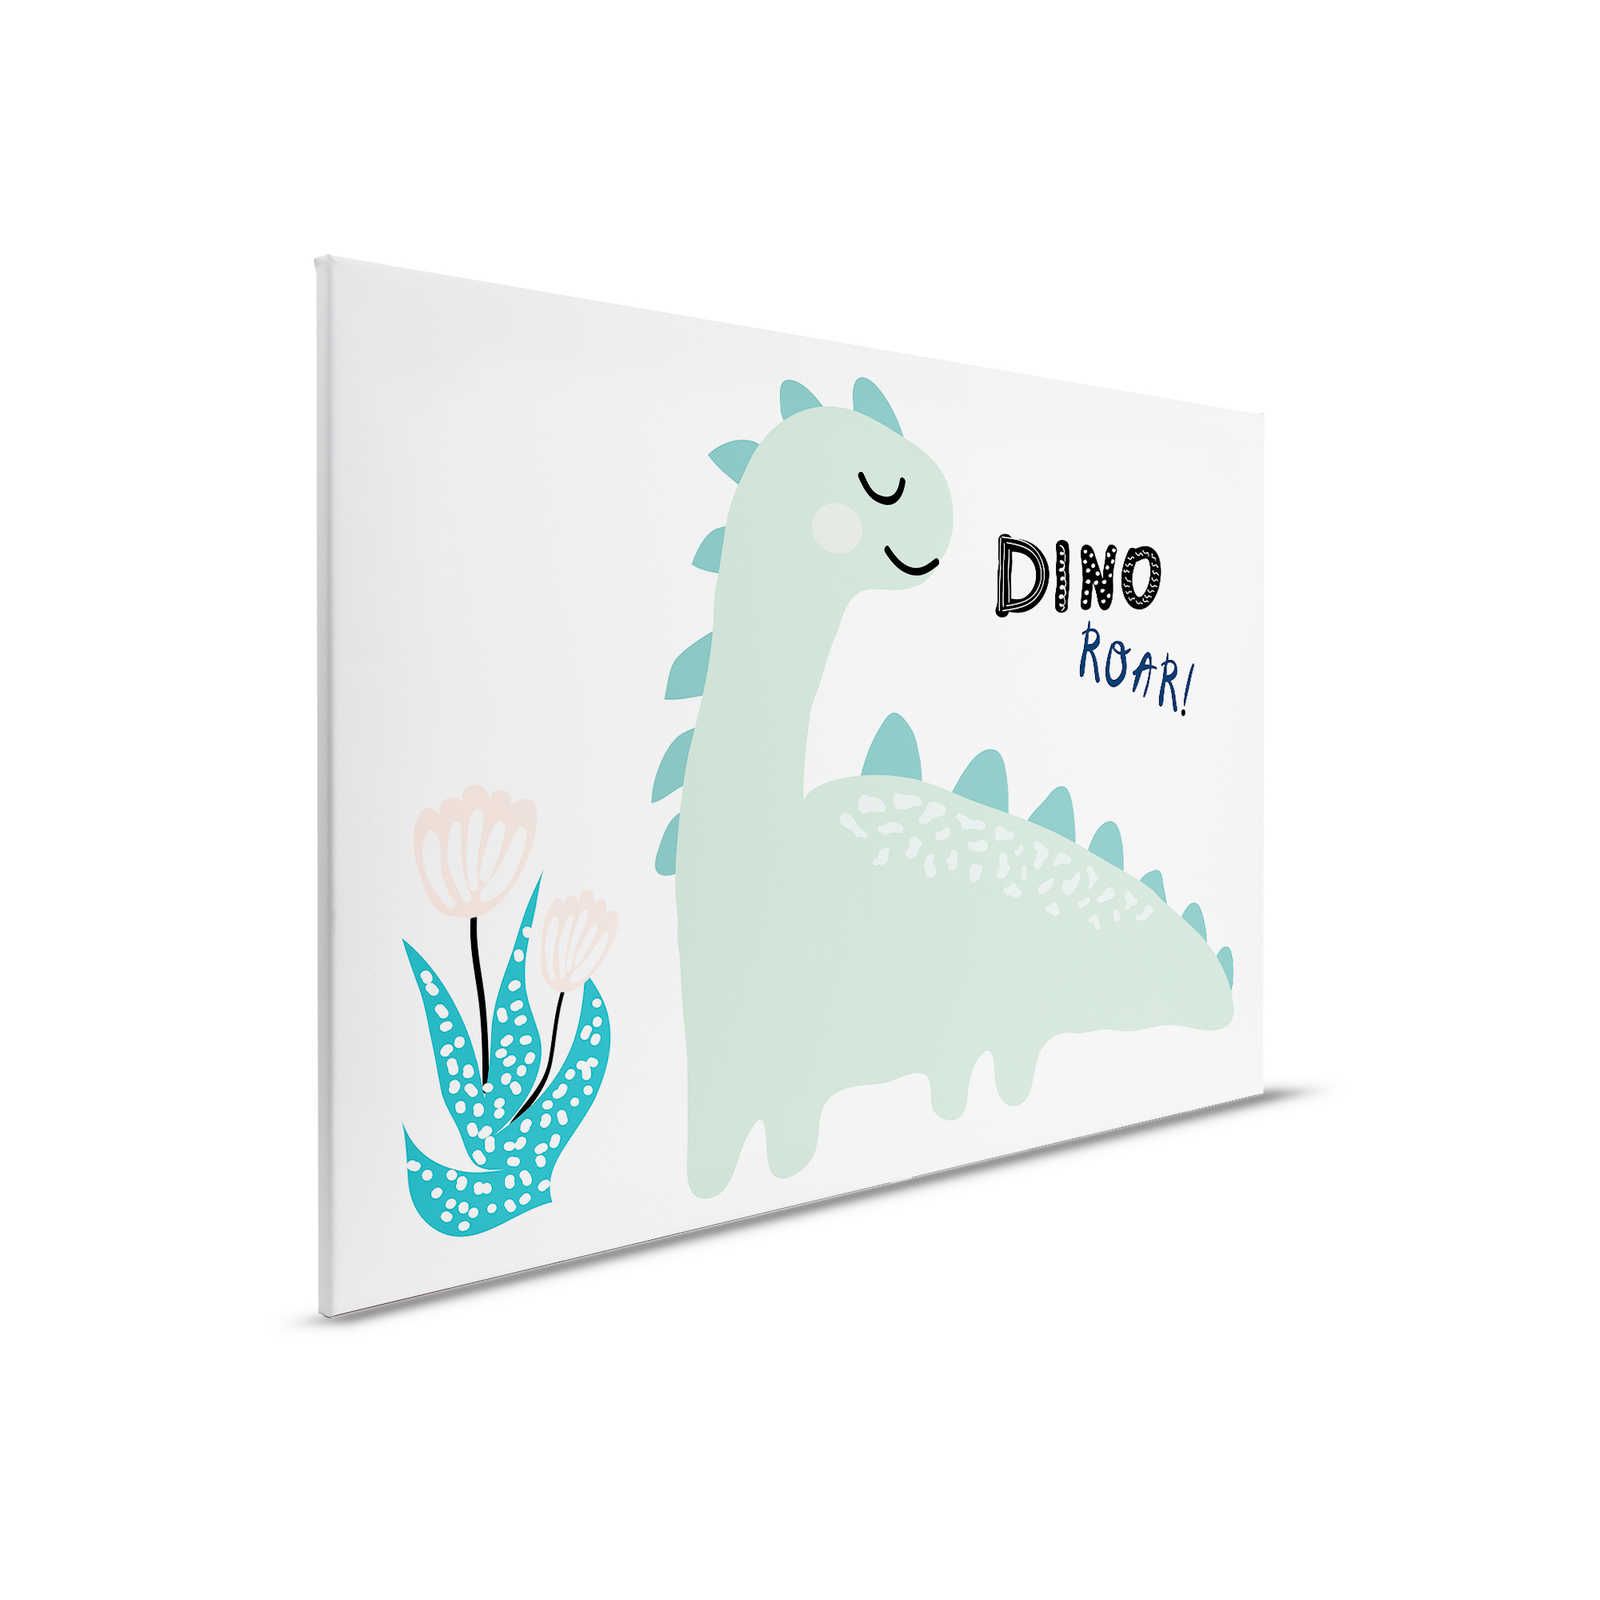 Lienzo con dinosaurio pintado - 90 cm x 60 cm
